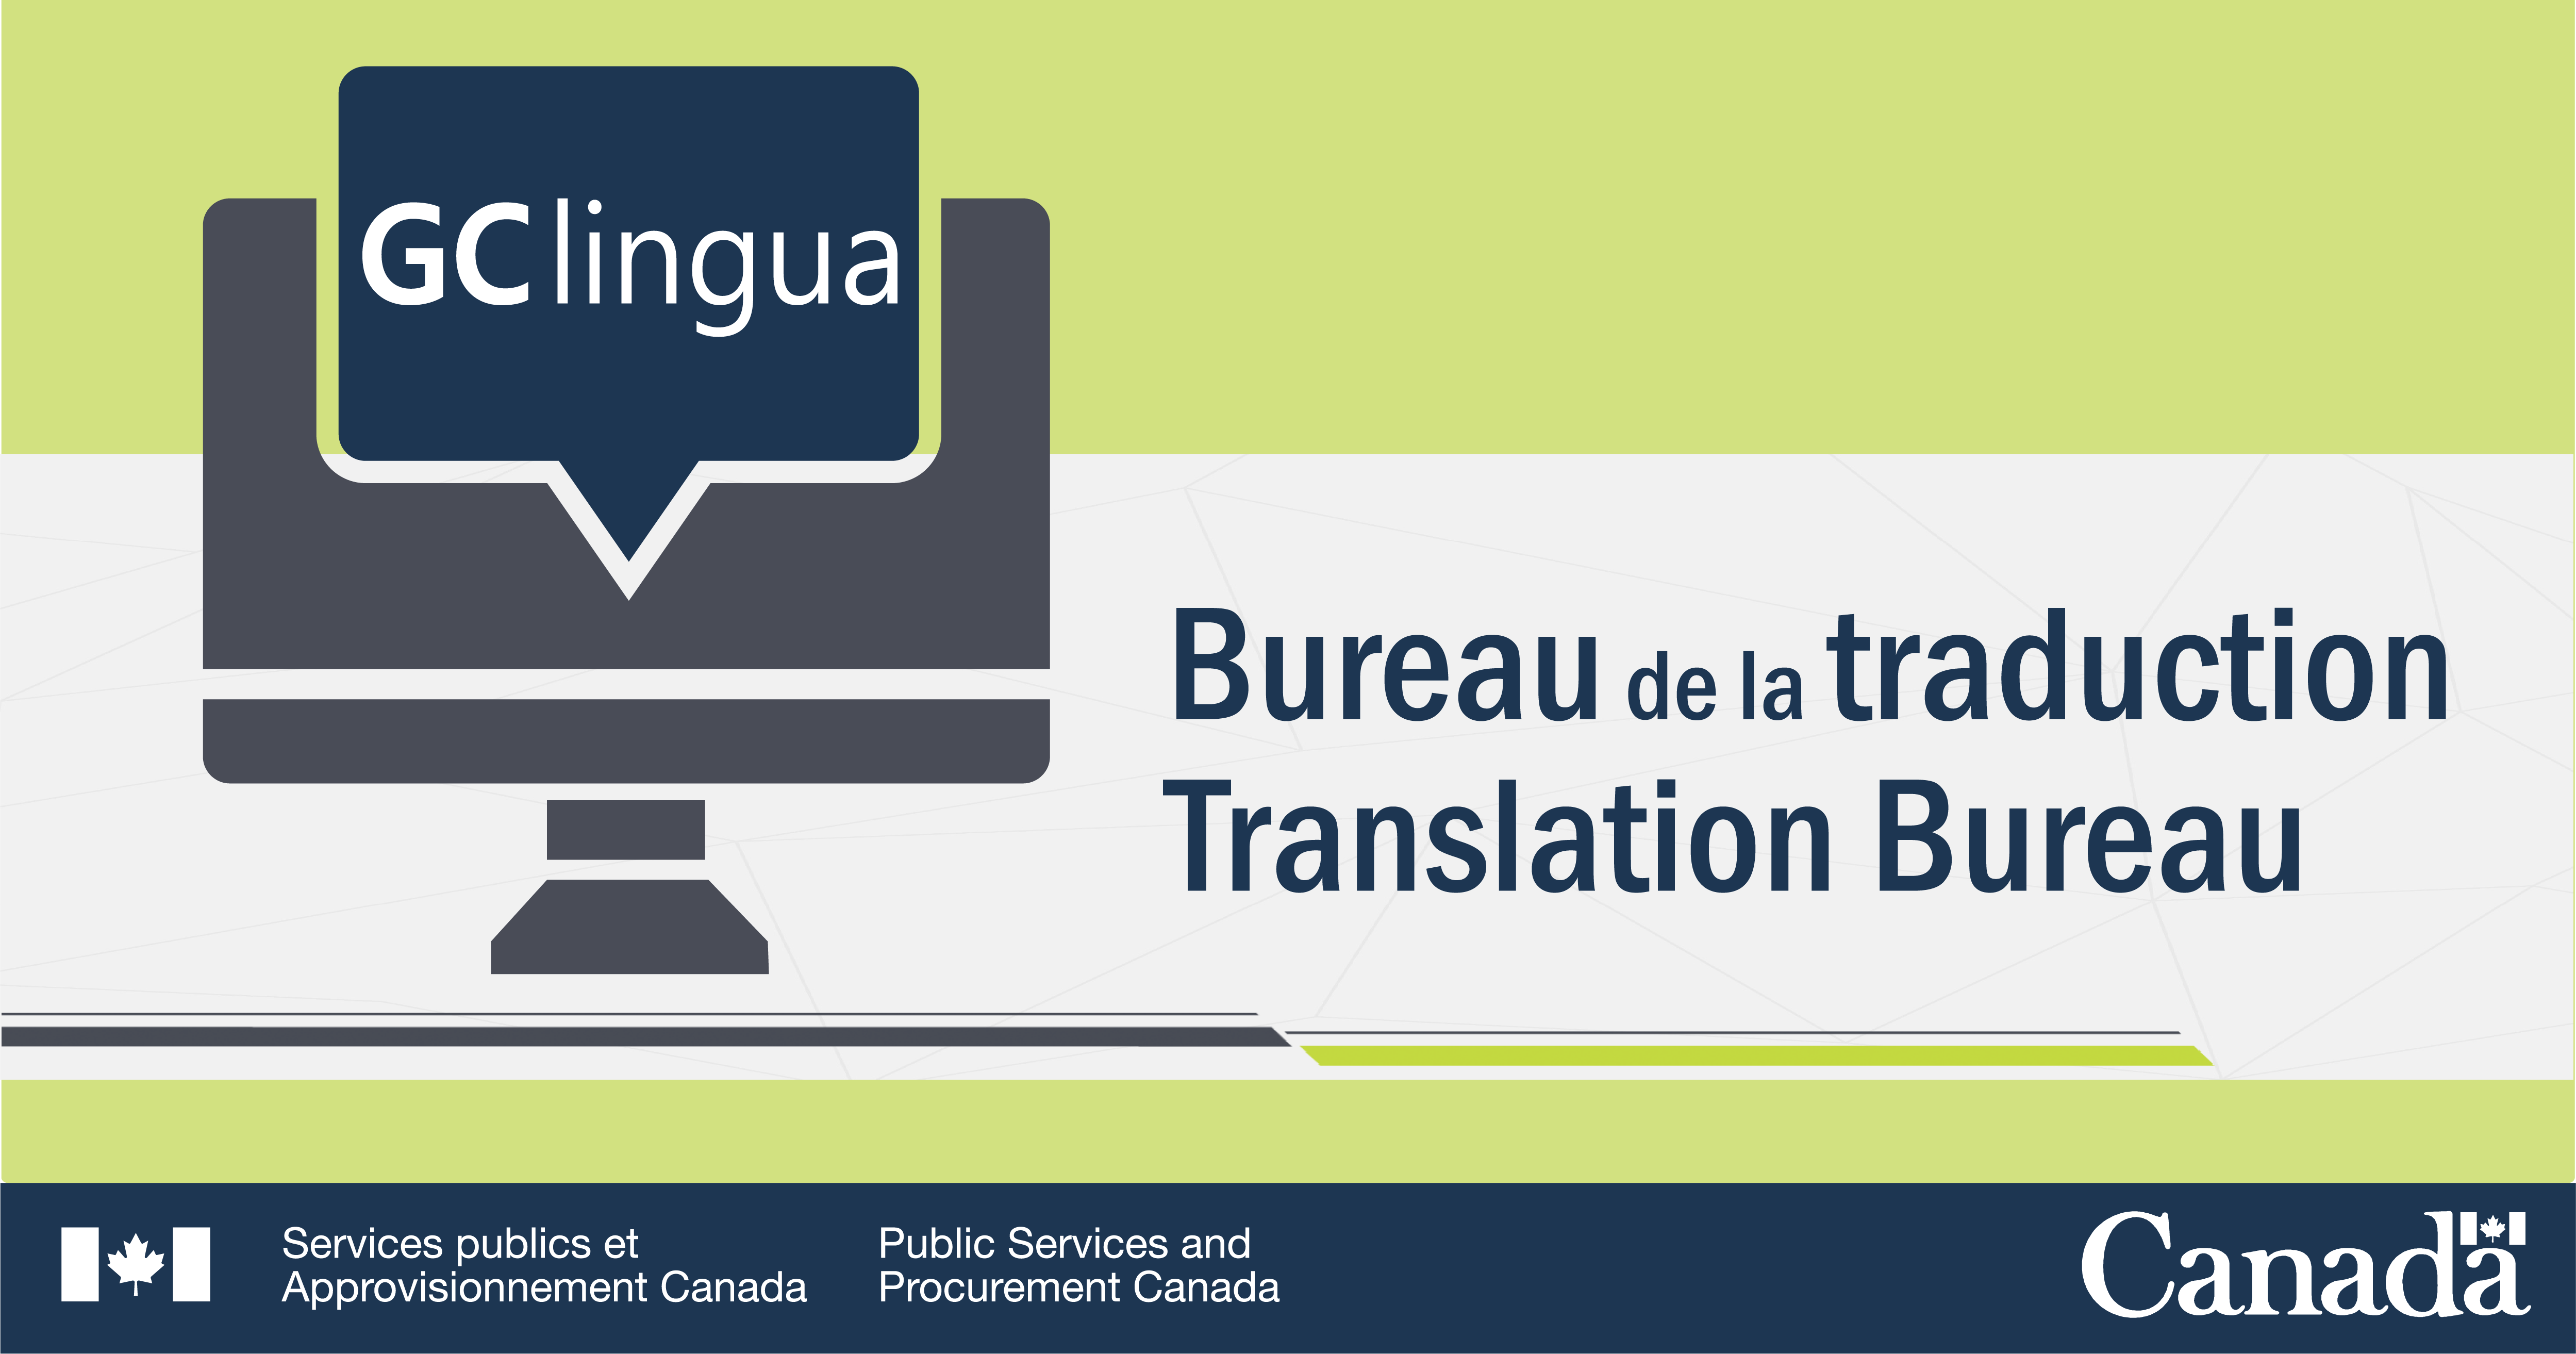 Description de l'image : En arrière plan, il y a un écran d'ordinateur ayant pour titre « GClingua ». À droite de l'image, on peut lire « Bureau de la traduction / Translation Bureau ». Au bas de l'image, il y a la signature du Ministère et le symbole Canada.